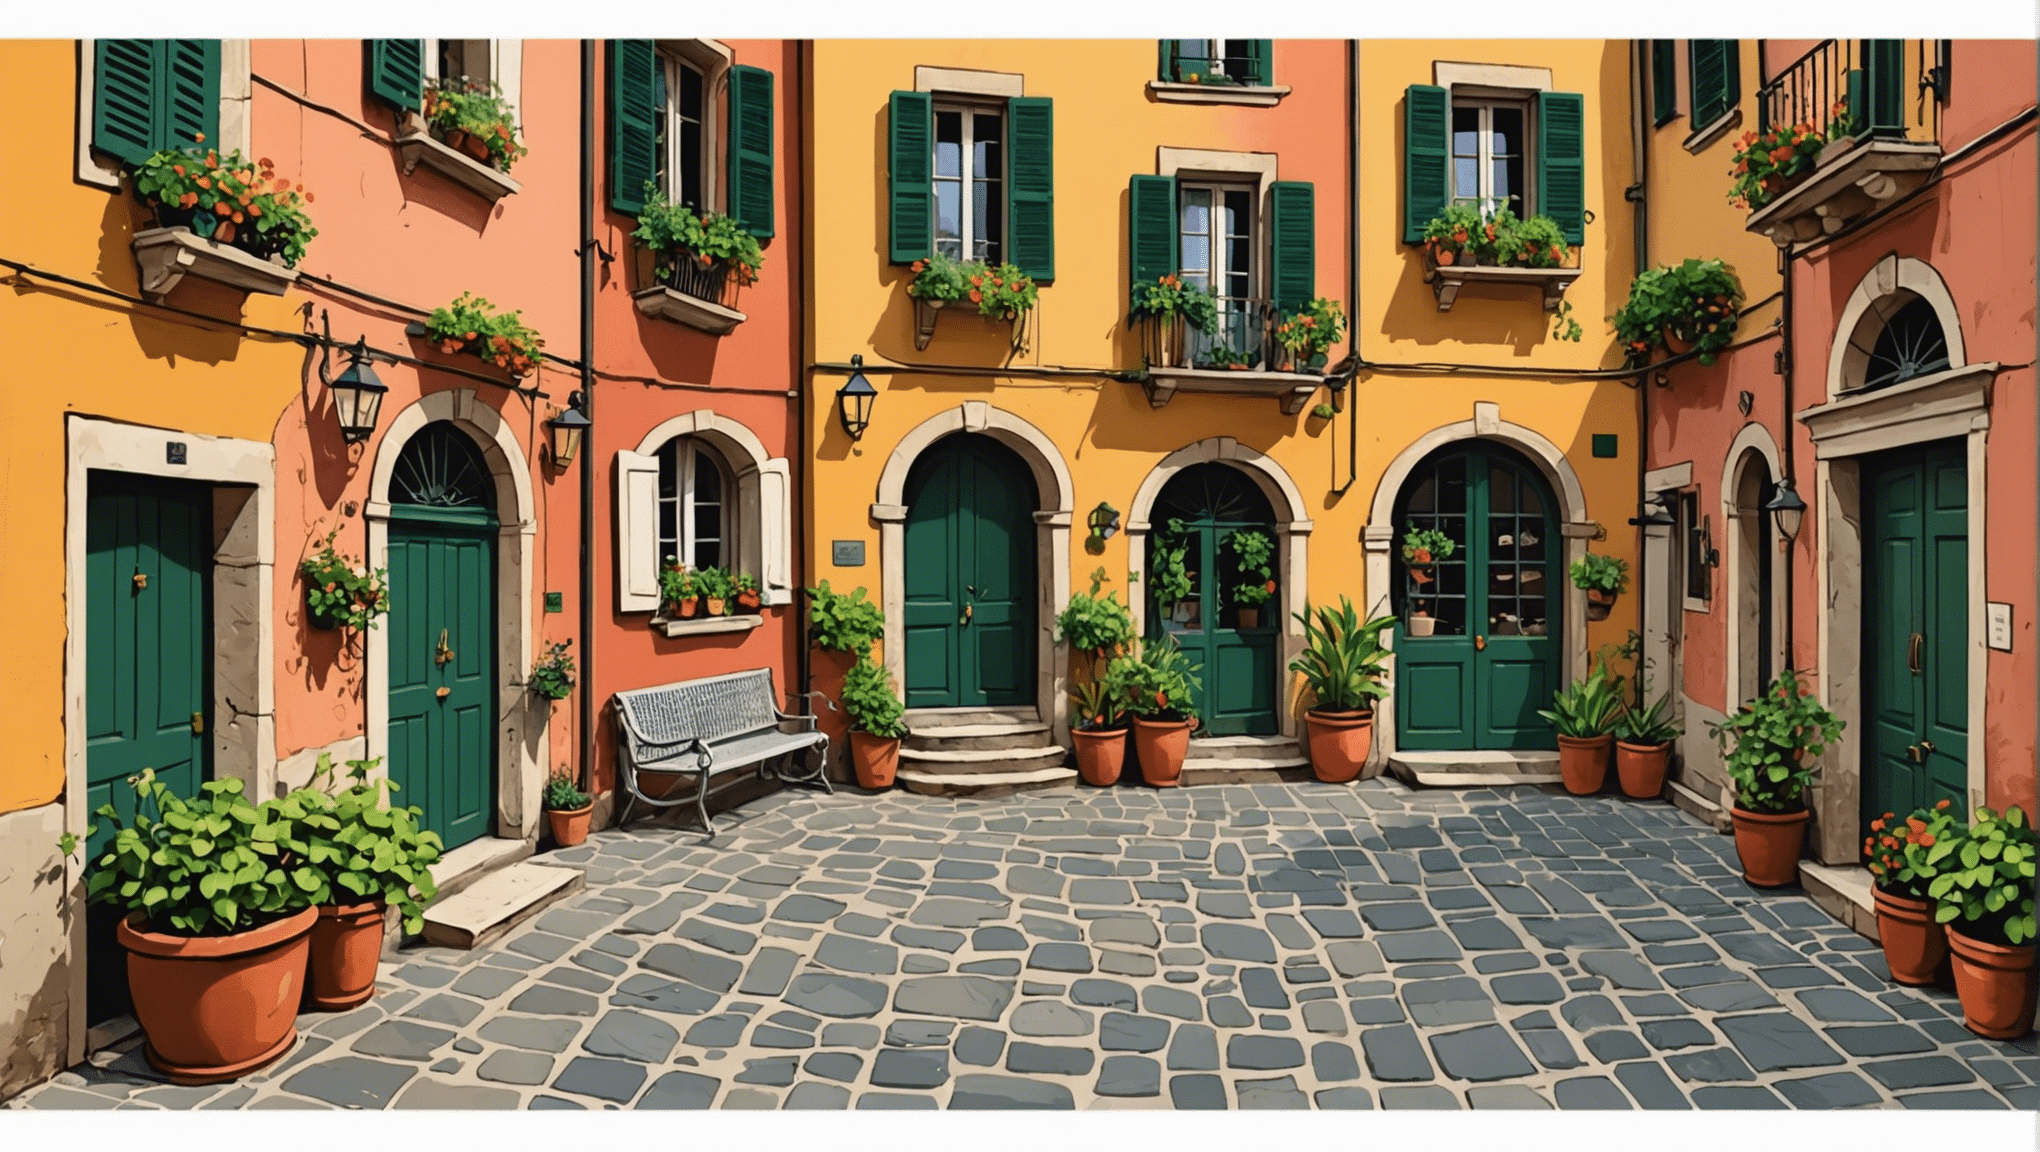 descubra tudo o que você precisa saber sobre gorjetas na Itália: dicas e tradições. guia completo para gorjetas bem-sucedidas durante sua estadia na Itália.